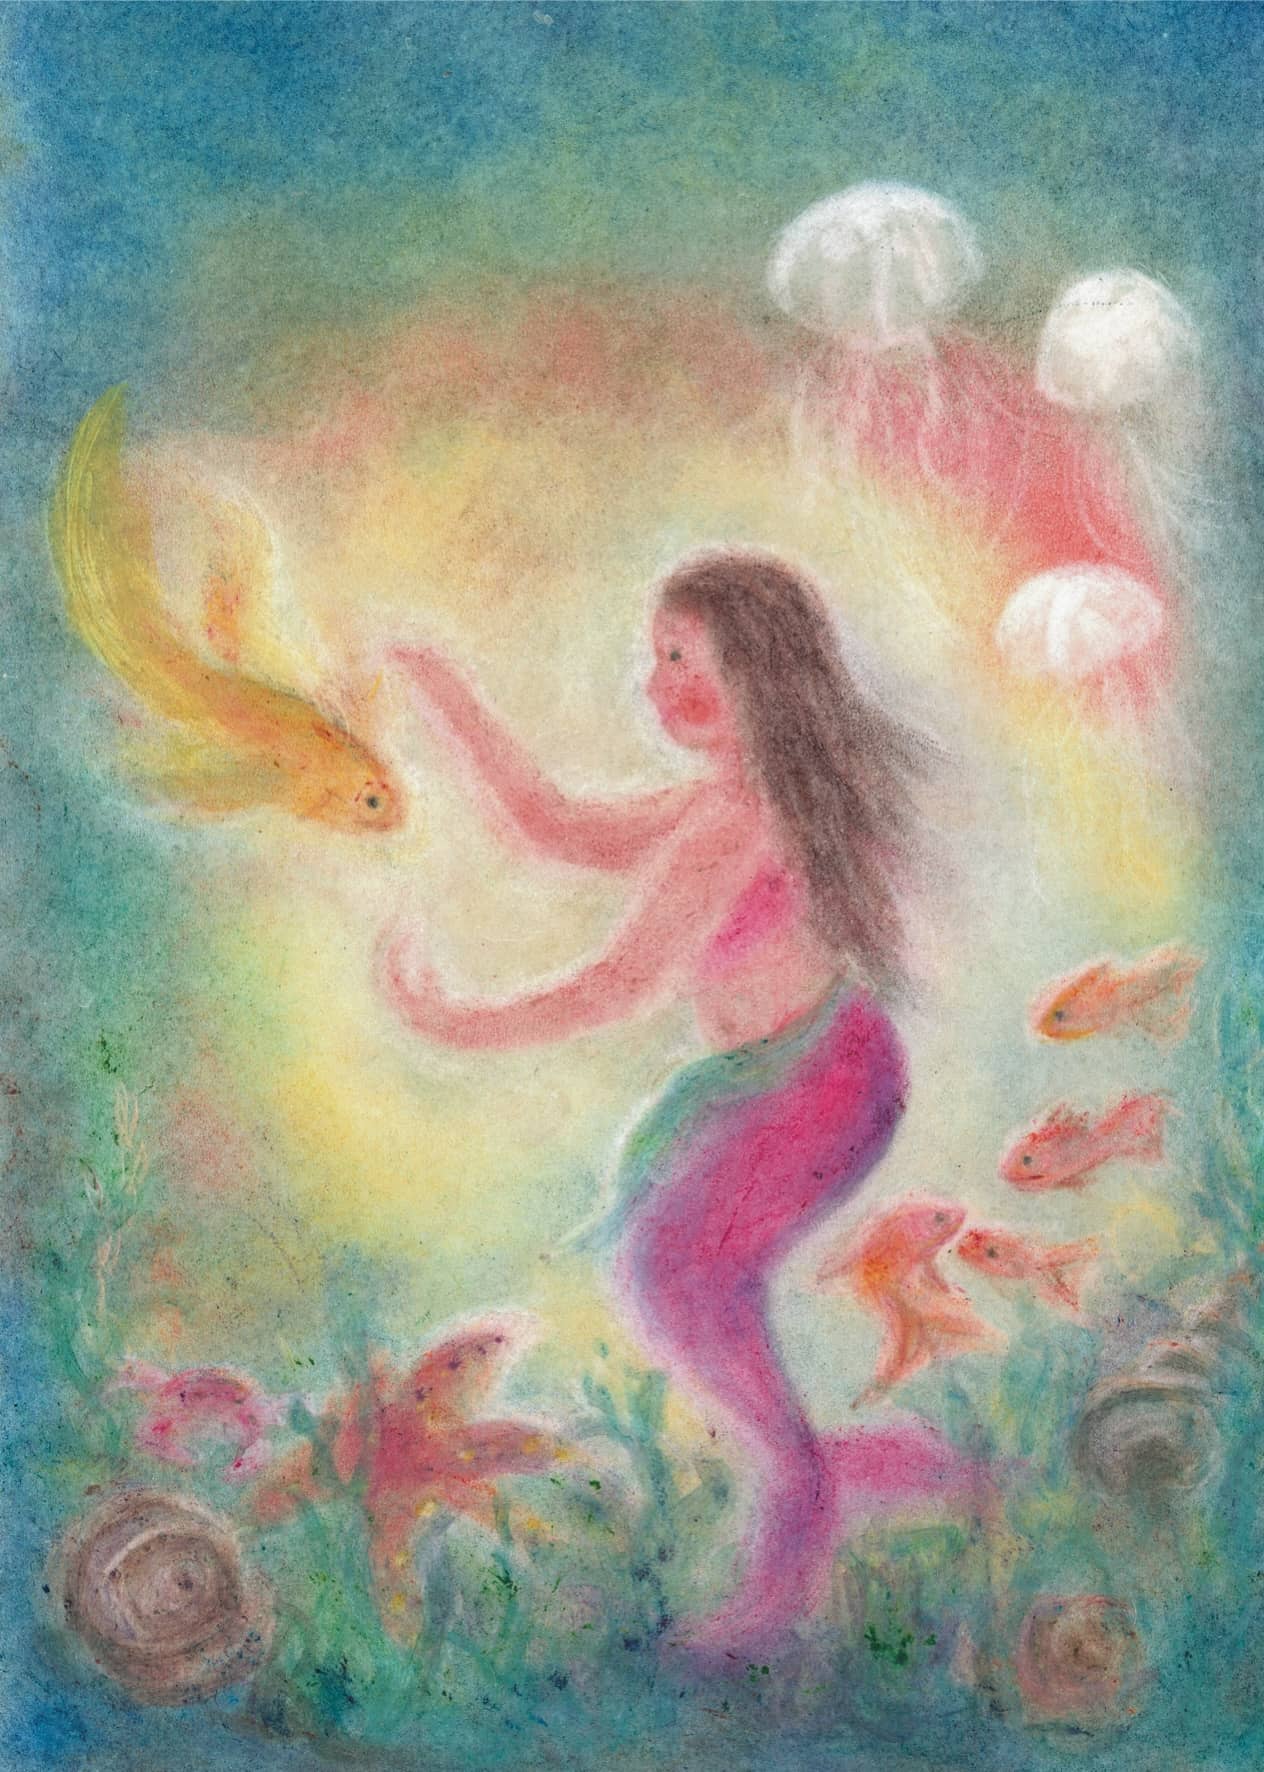 Seccorell Postkarte "Meermädchen" verzaubert mit einer Unterwasserwelt in lebendigen Seccorell-Farben und einem Hauch von Fantasie.